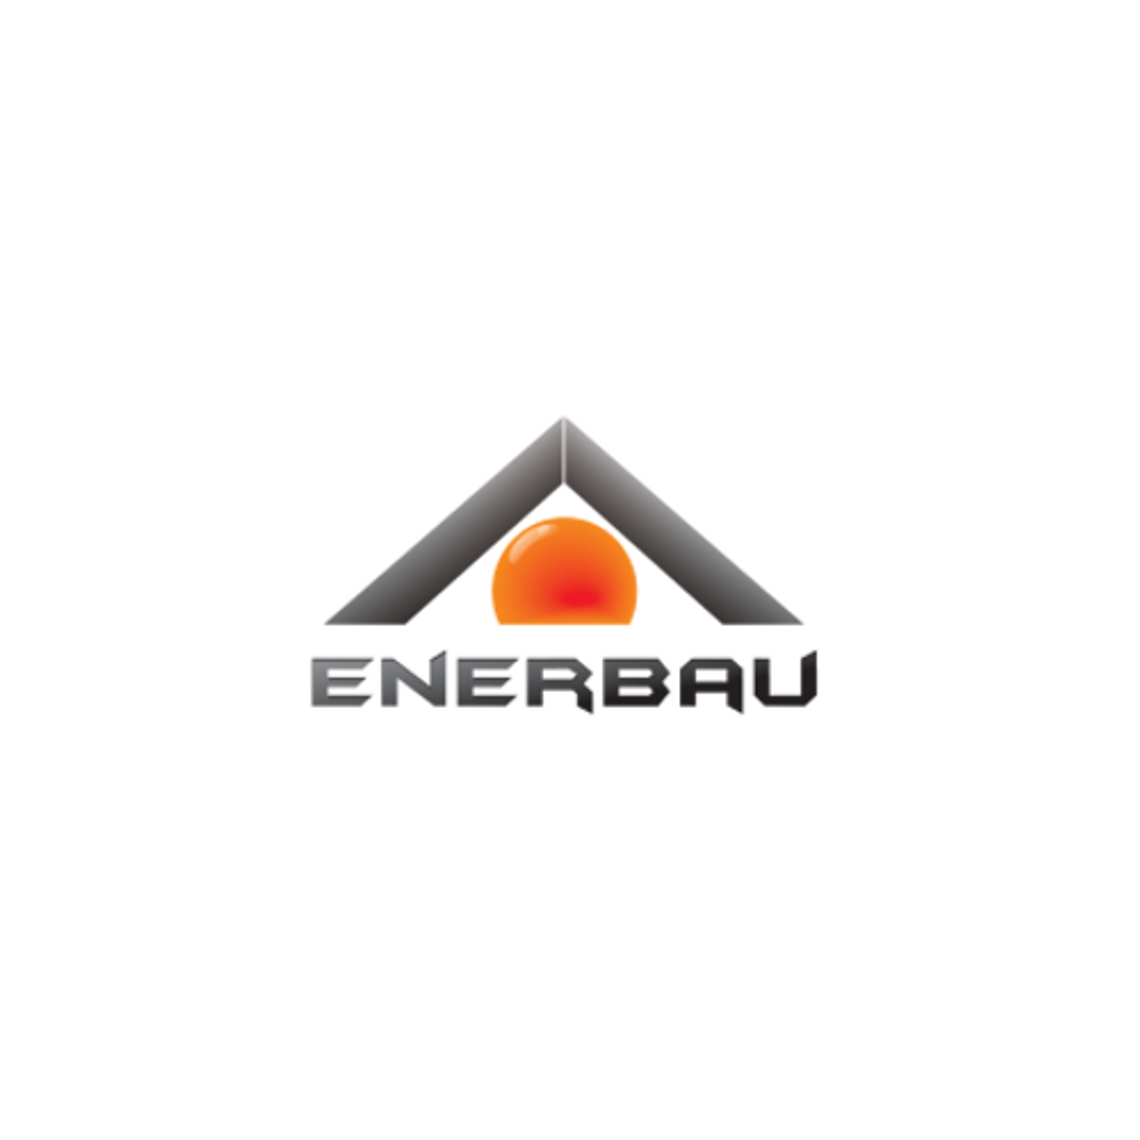 ENERBAU - profesjonalne ogrzewania na podczerwień